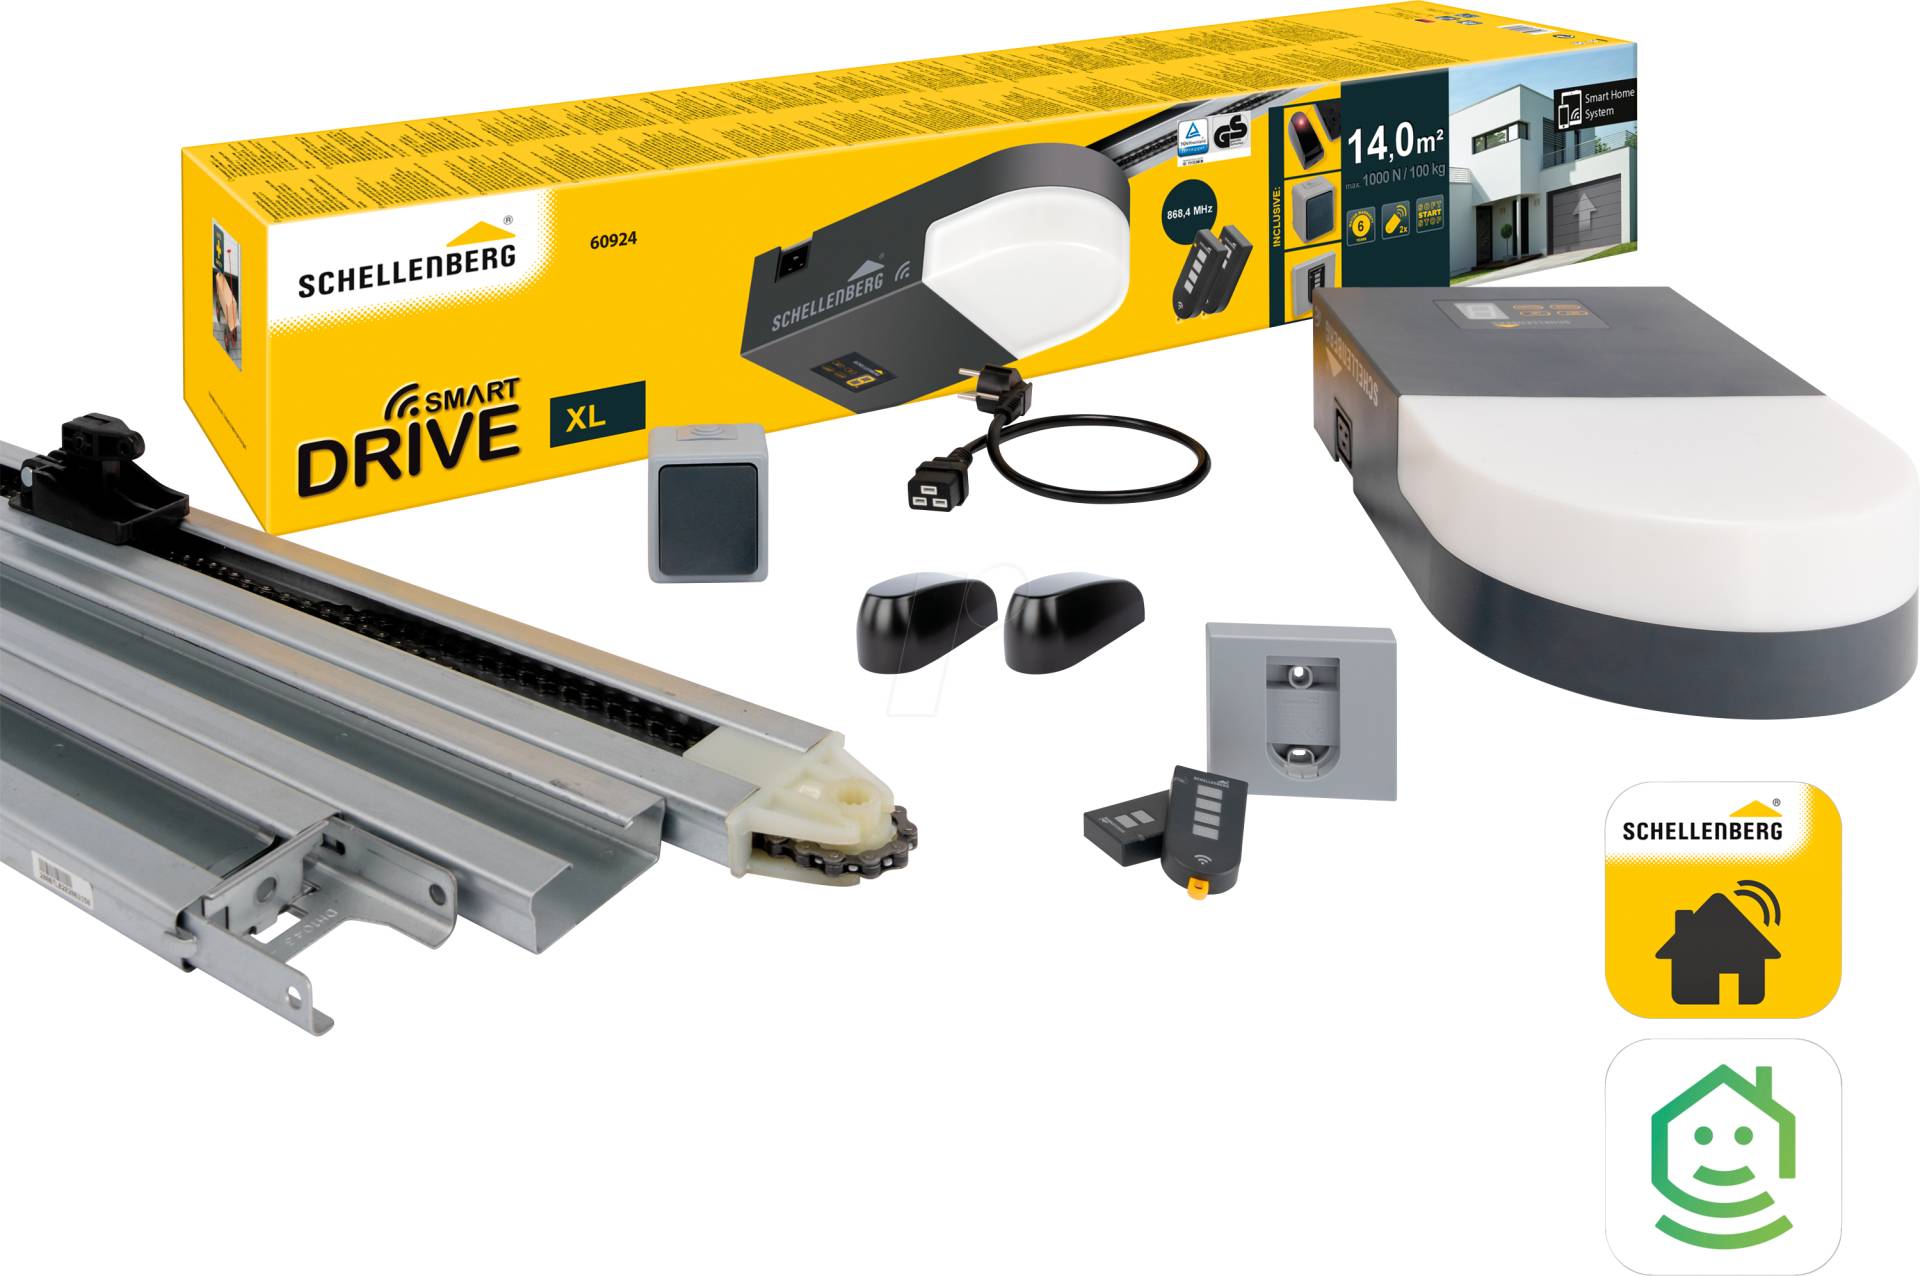 AS 60924 - Garagentorantrieb Smart Drive XL von Schellenberg